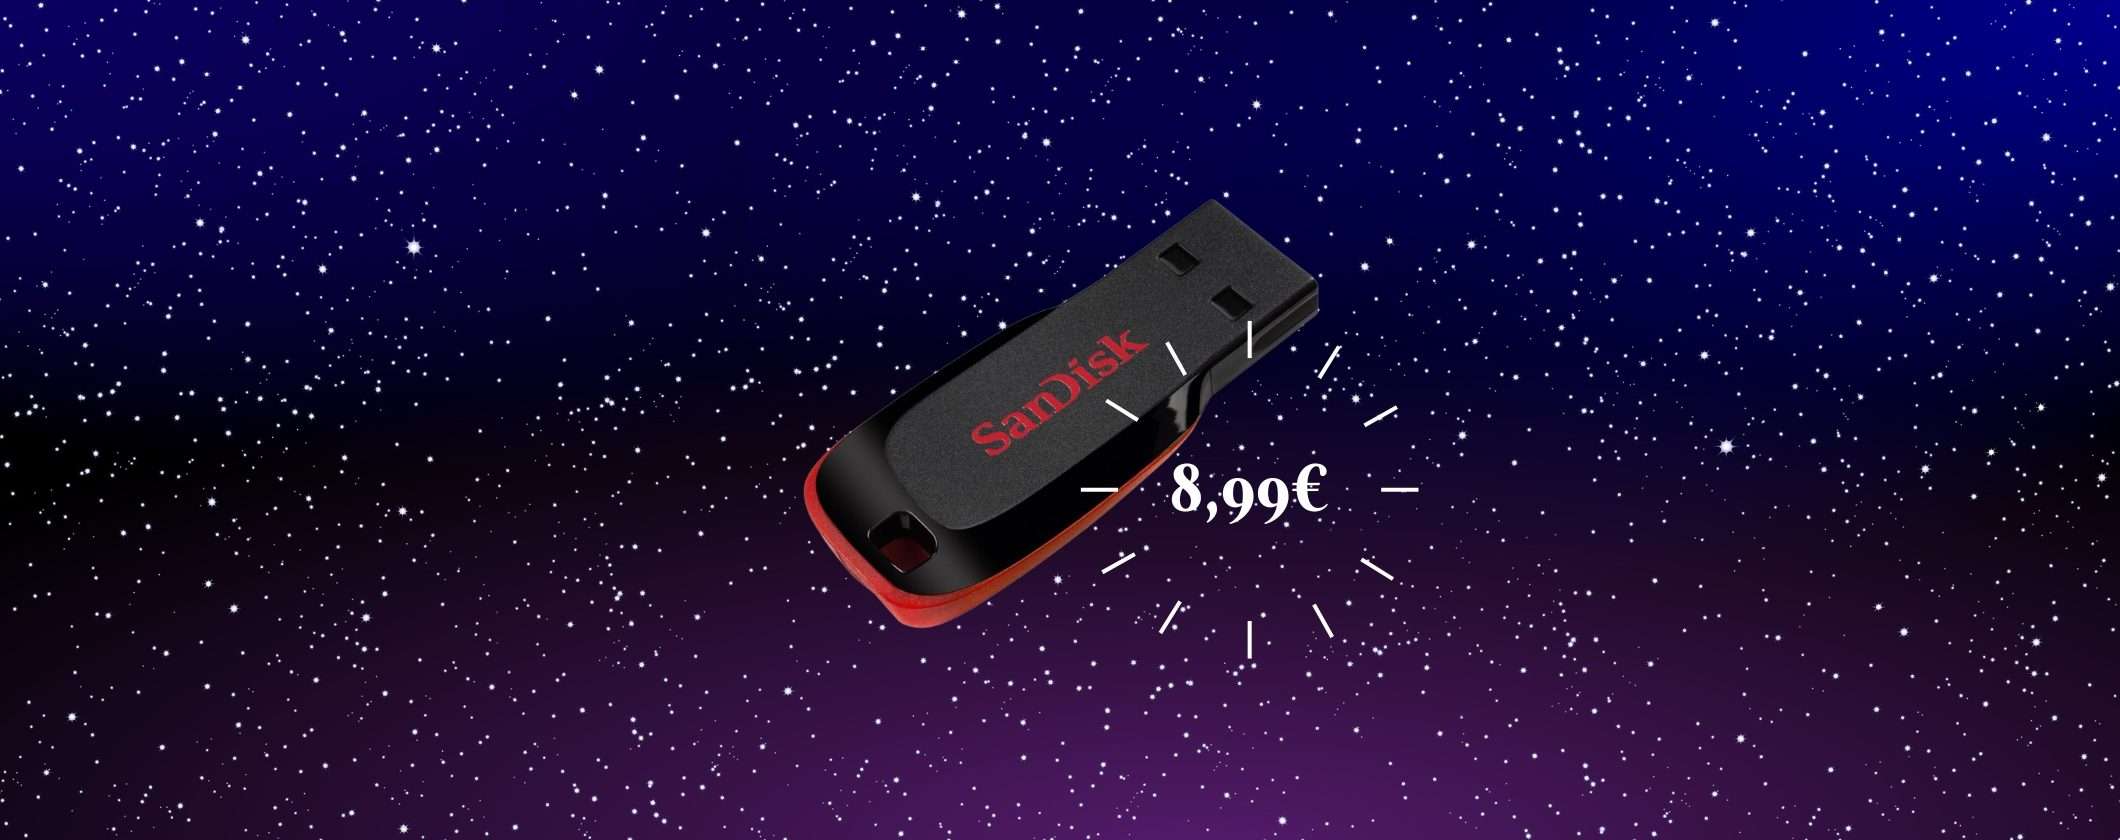 Pen Drive SanDisk USB-A a soli 8,99€ su Unieuro